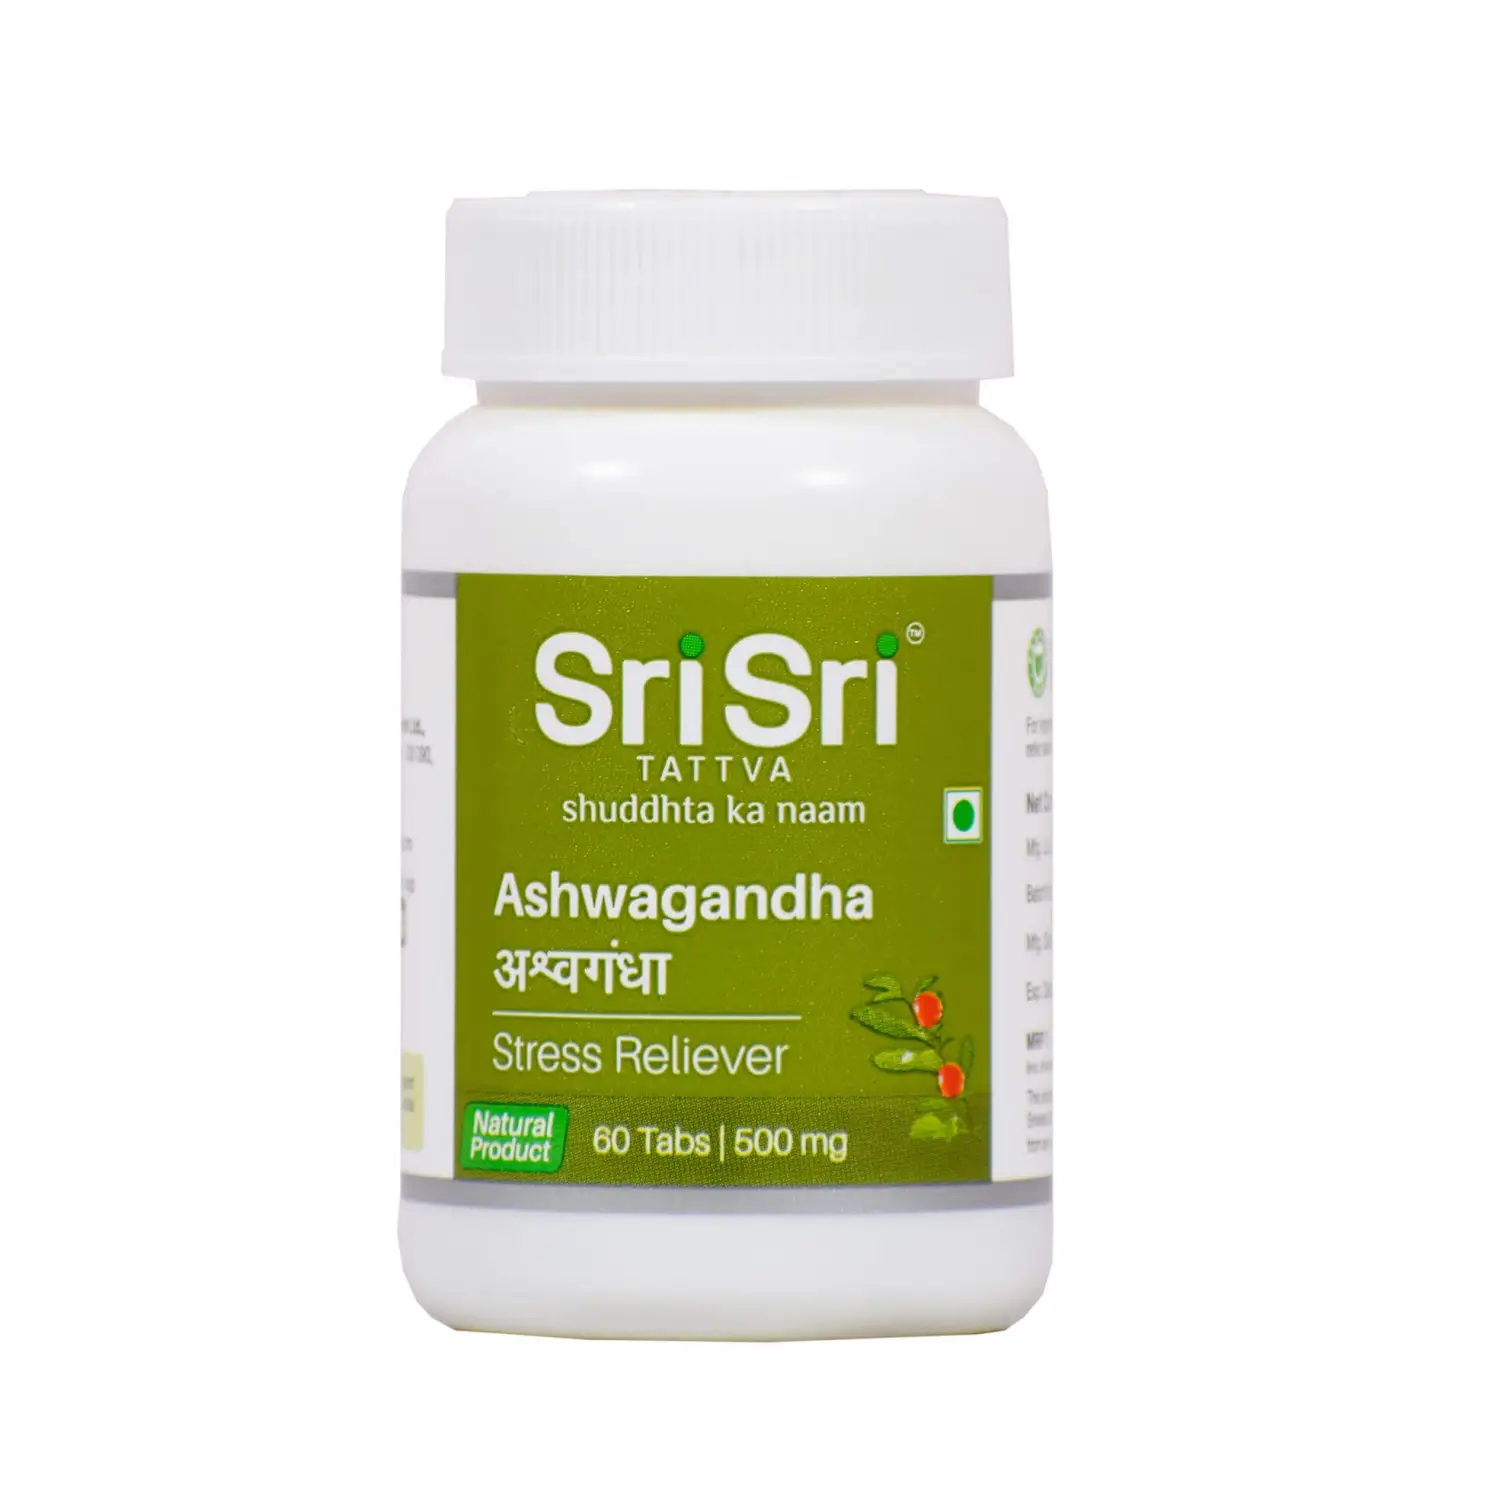 Sri Sri Tattva Ashwagandha (антидепрессант, адаптоген) 60 табл. 